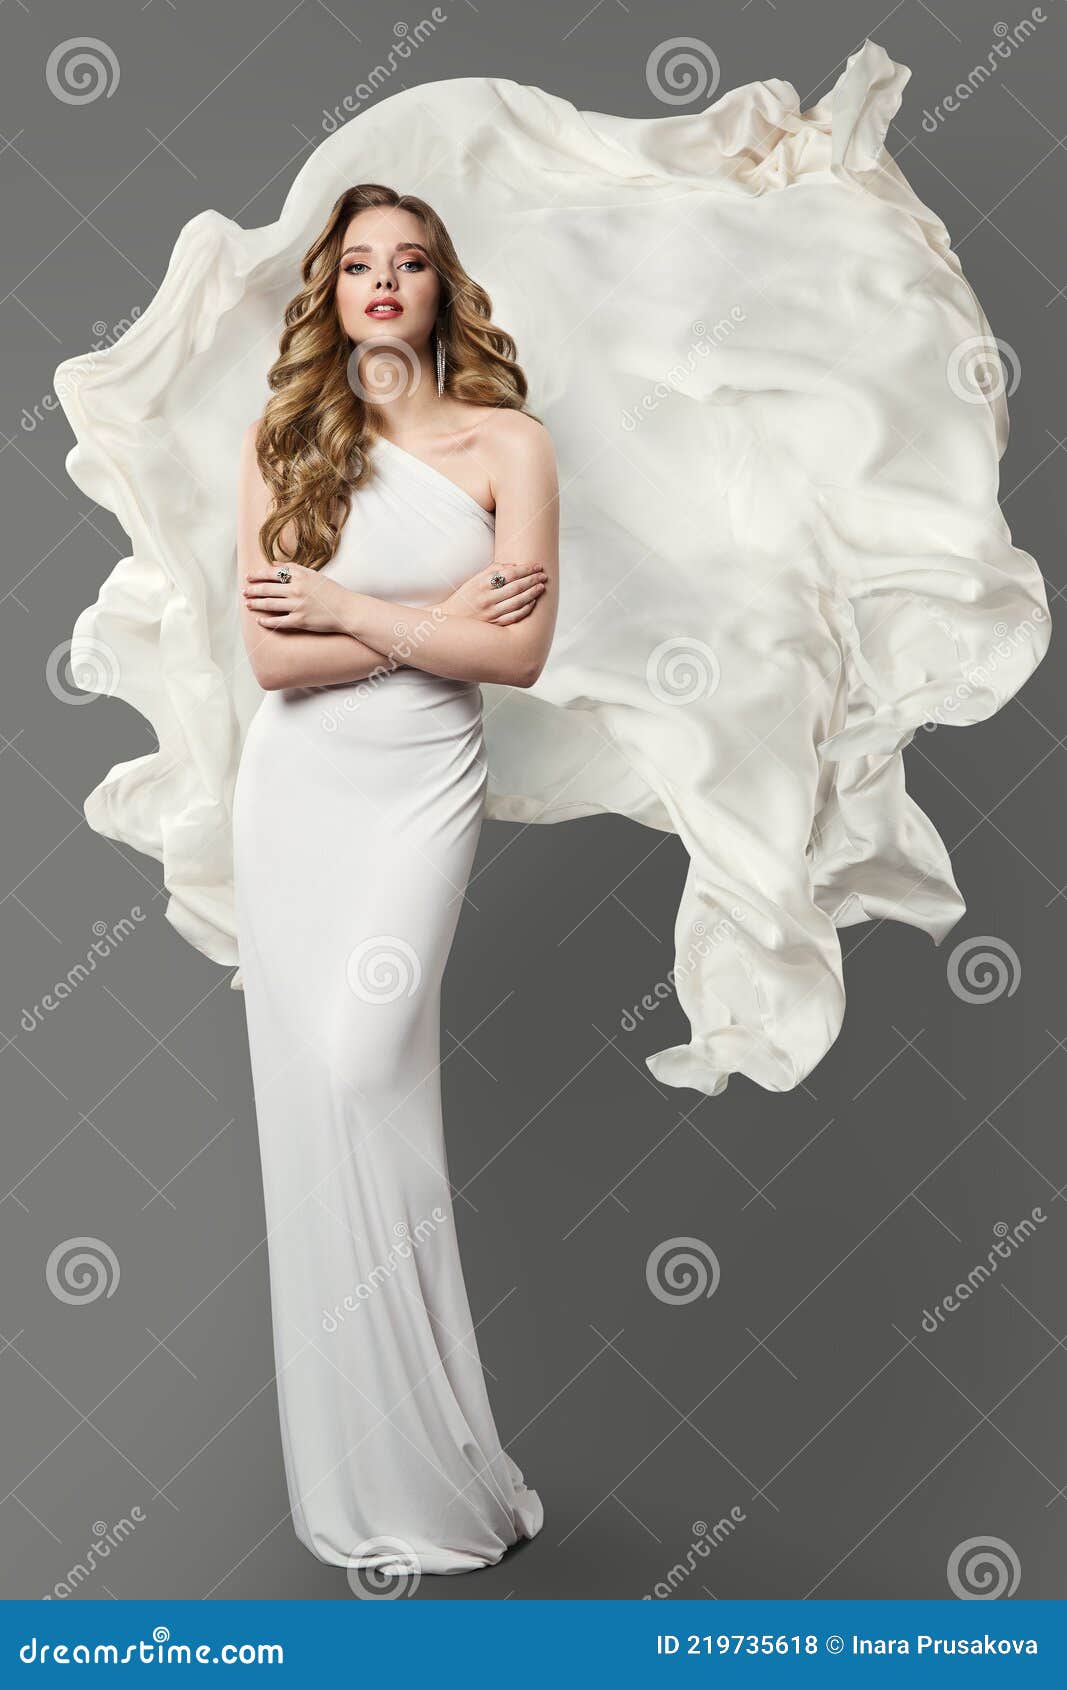 Mujer Elegante En Vestido Blanco. Modelo De Moda En Vestido De Novia. Chica De Belleza Con Tela De Seda Blanca Voladora Sobre Fond Foto de - Imagen de ajuste, atractivo: 219735618